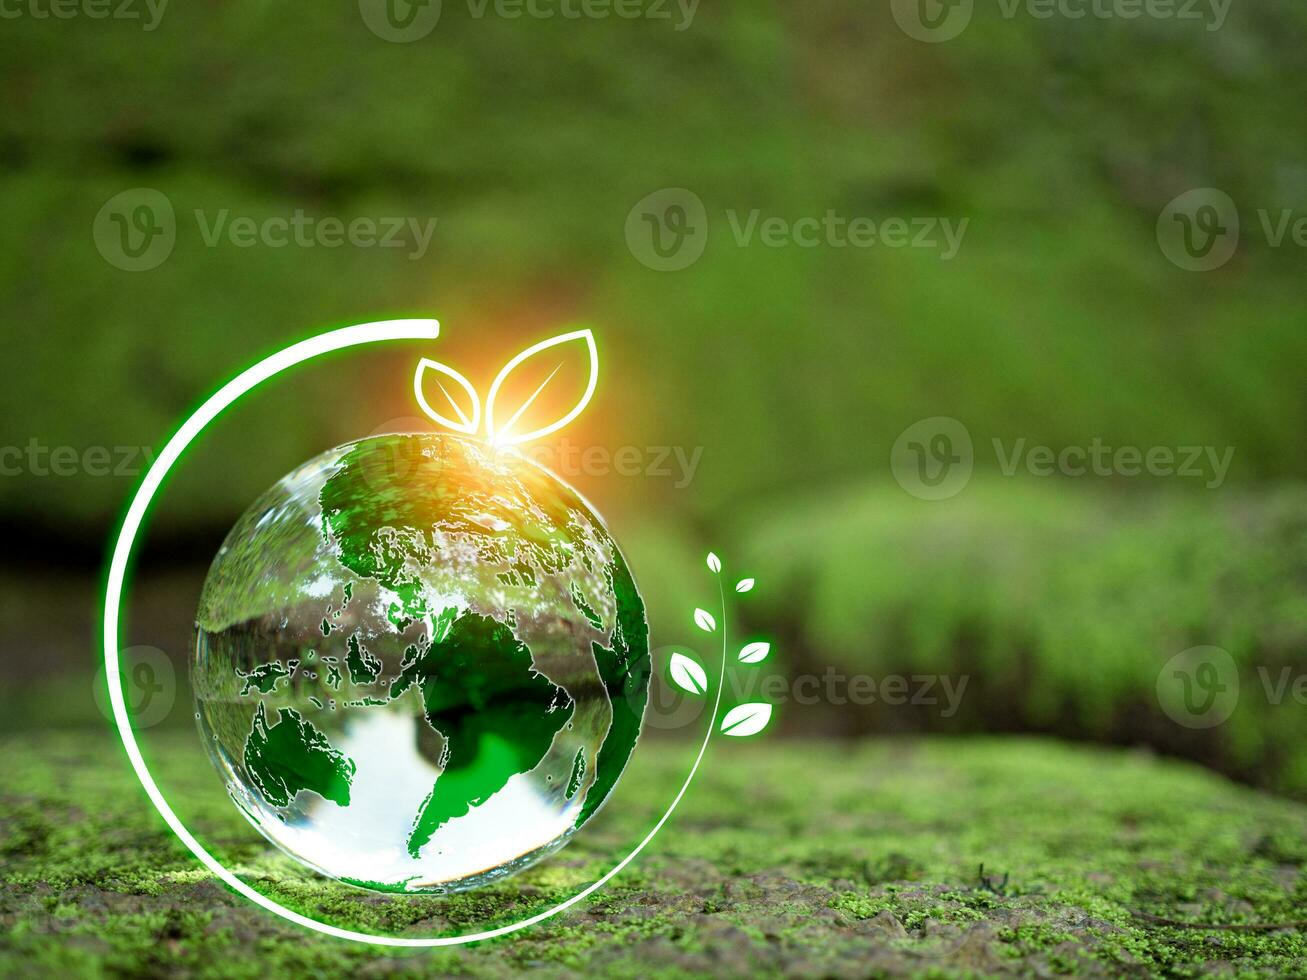 kristal bal Aan mos in groen Woud. milieu concept ecologie en duurzame milieu van de wereld. aarde dag concept. foto